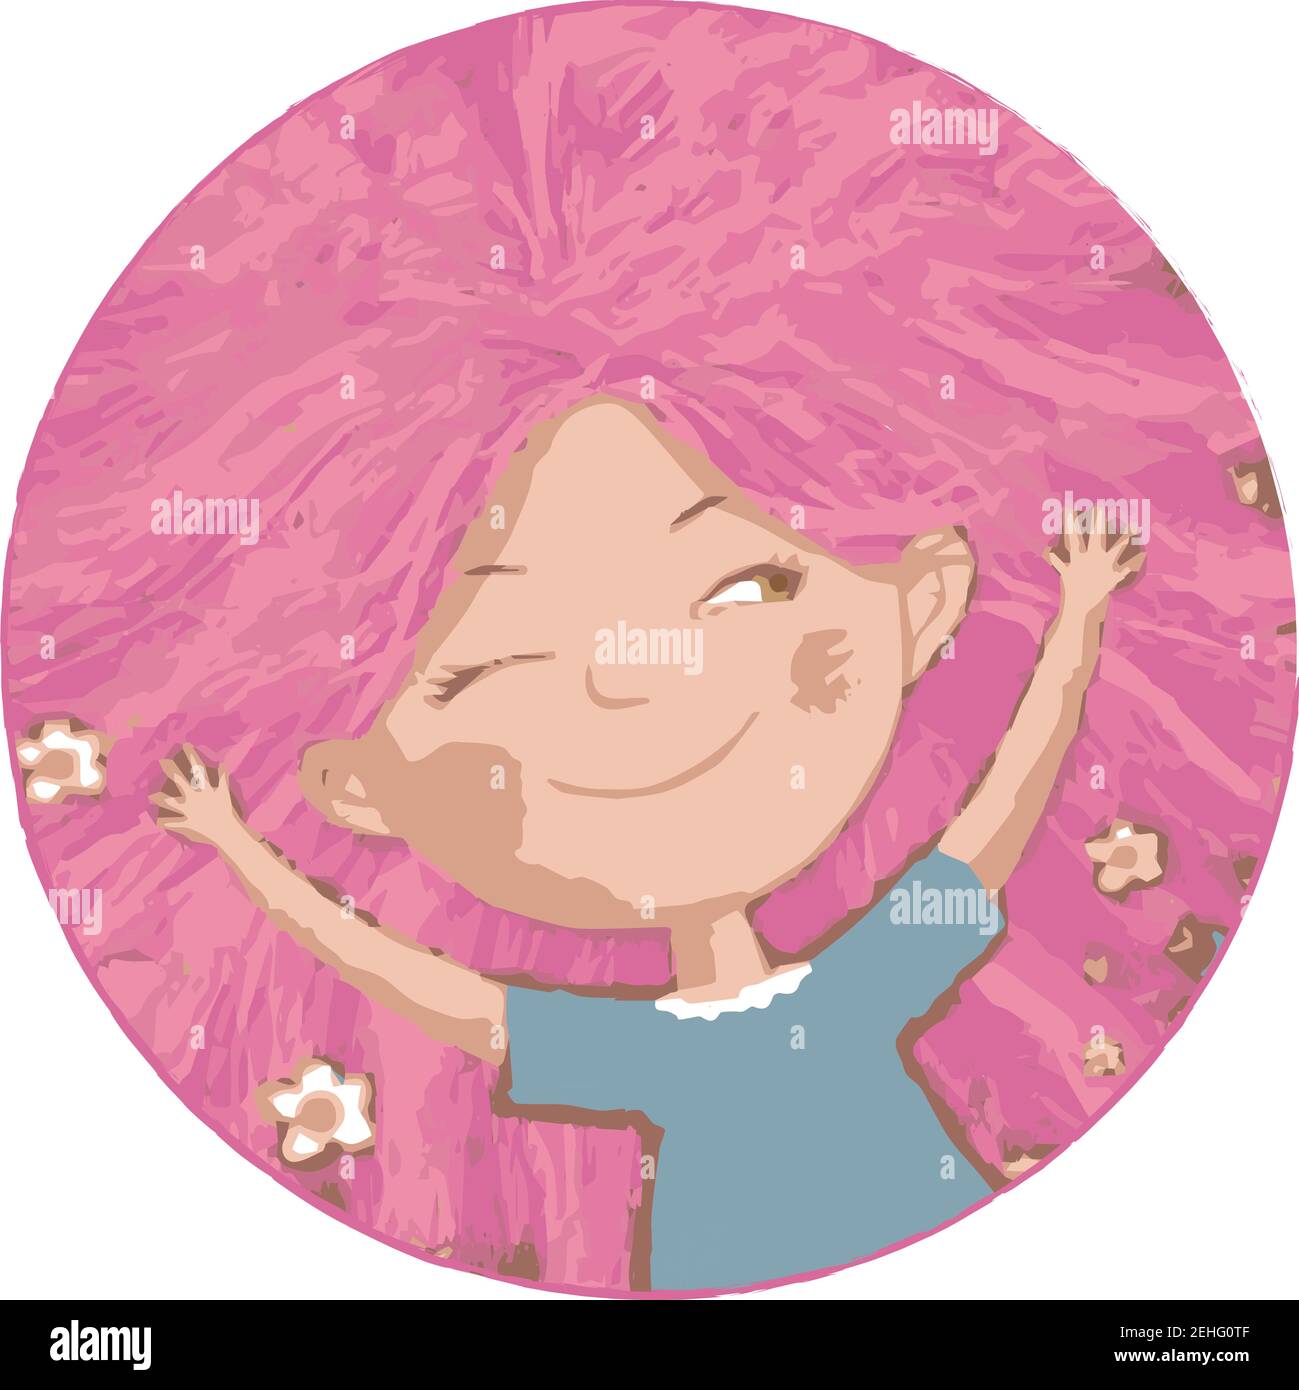 Mädchen mit rosa Haaren liegt mit ihren Armen ausgestreckt und winks traumhaft Stock Vektor